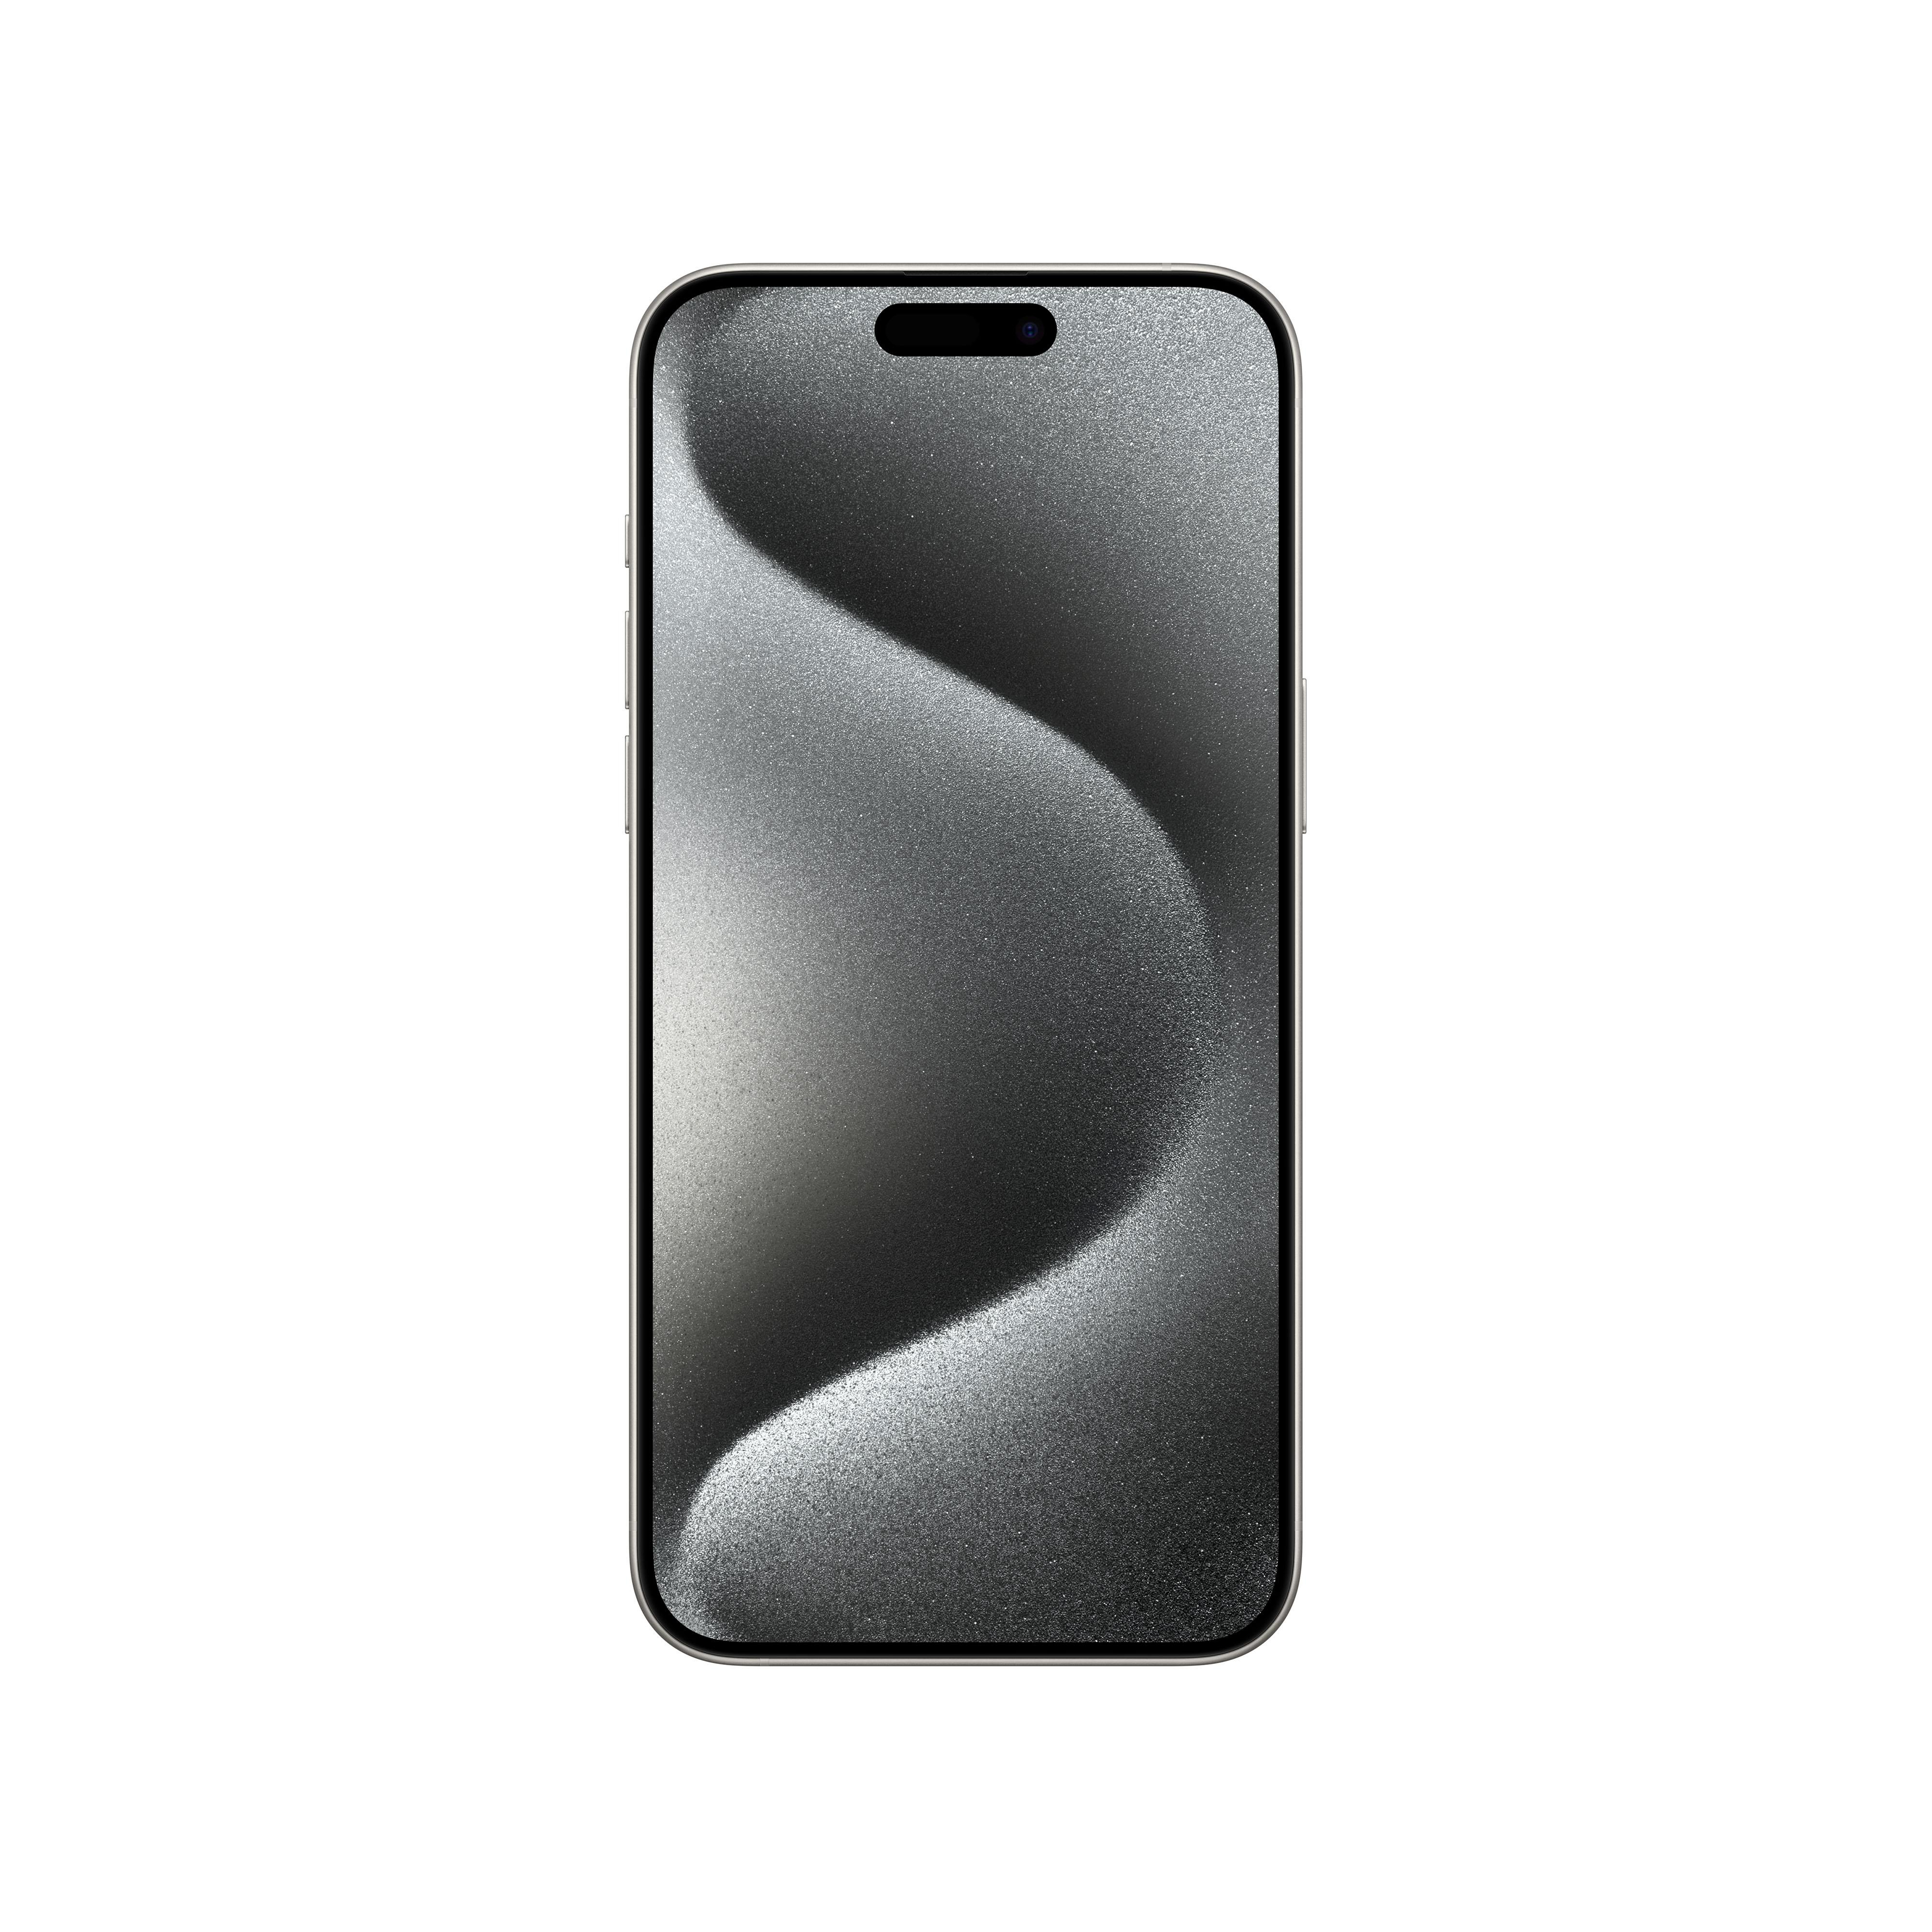 5G 15 iPhone Pro Weiß APPLE 1 Titan Max TB Dual SIM